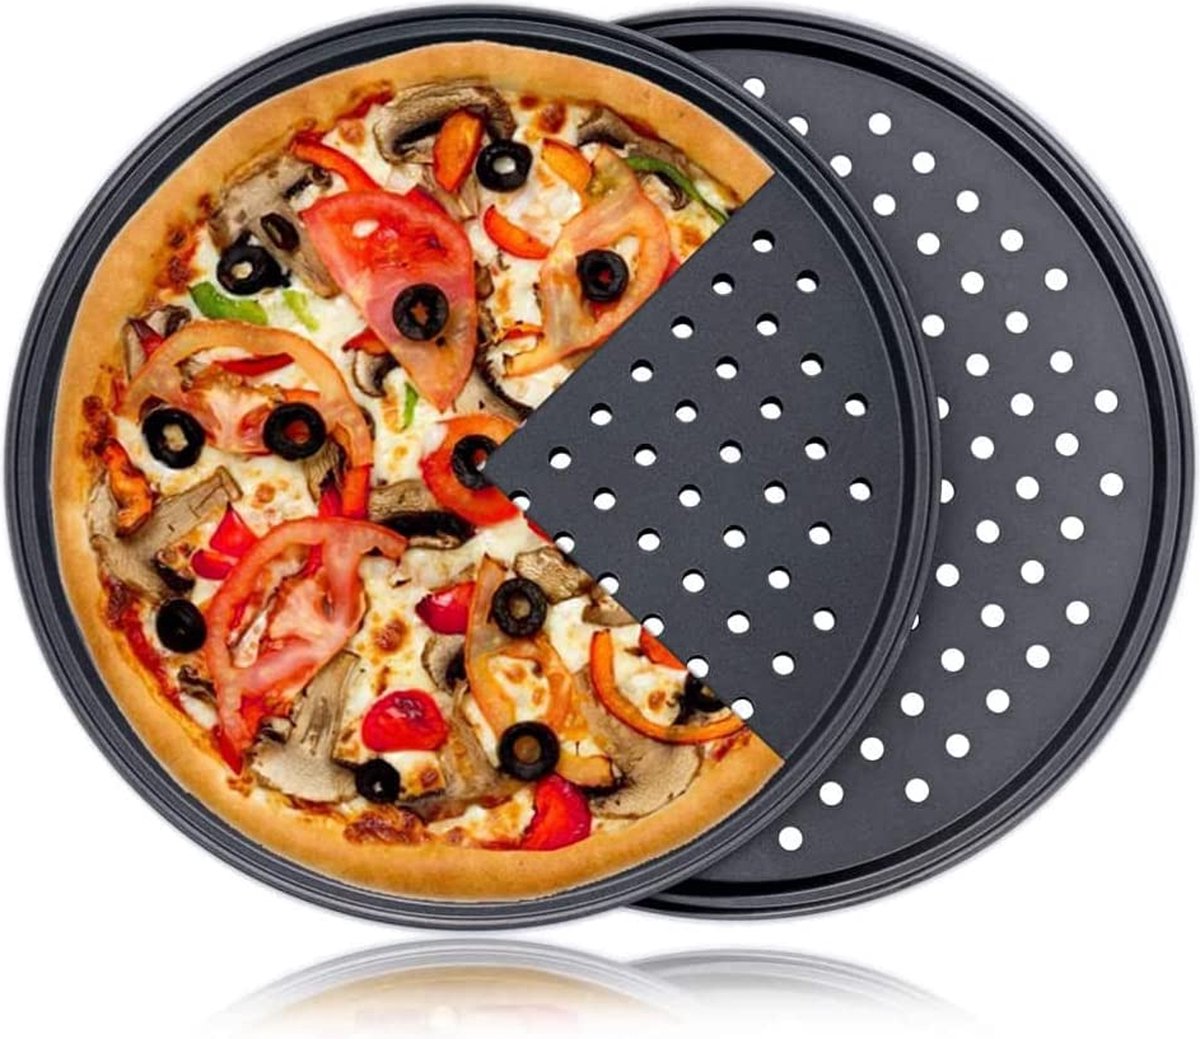 Pizzaplaat, rond, 28 cm, met gaten, verlaagde bakplaat, bakplaat, anti-aanbakbakken van koolstofstaal voor pizza en flambÃ©e, set van 2 pizzapannen, geperforeerd voor oven, verouderde korst